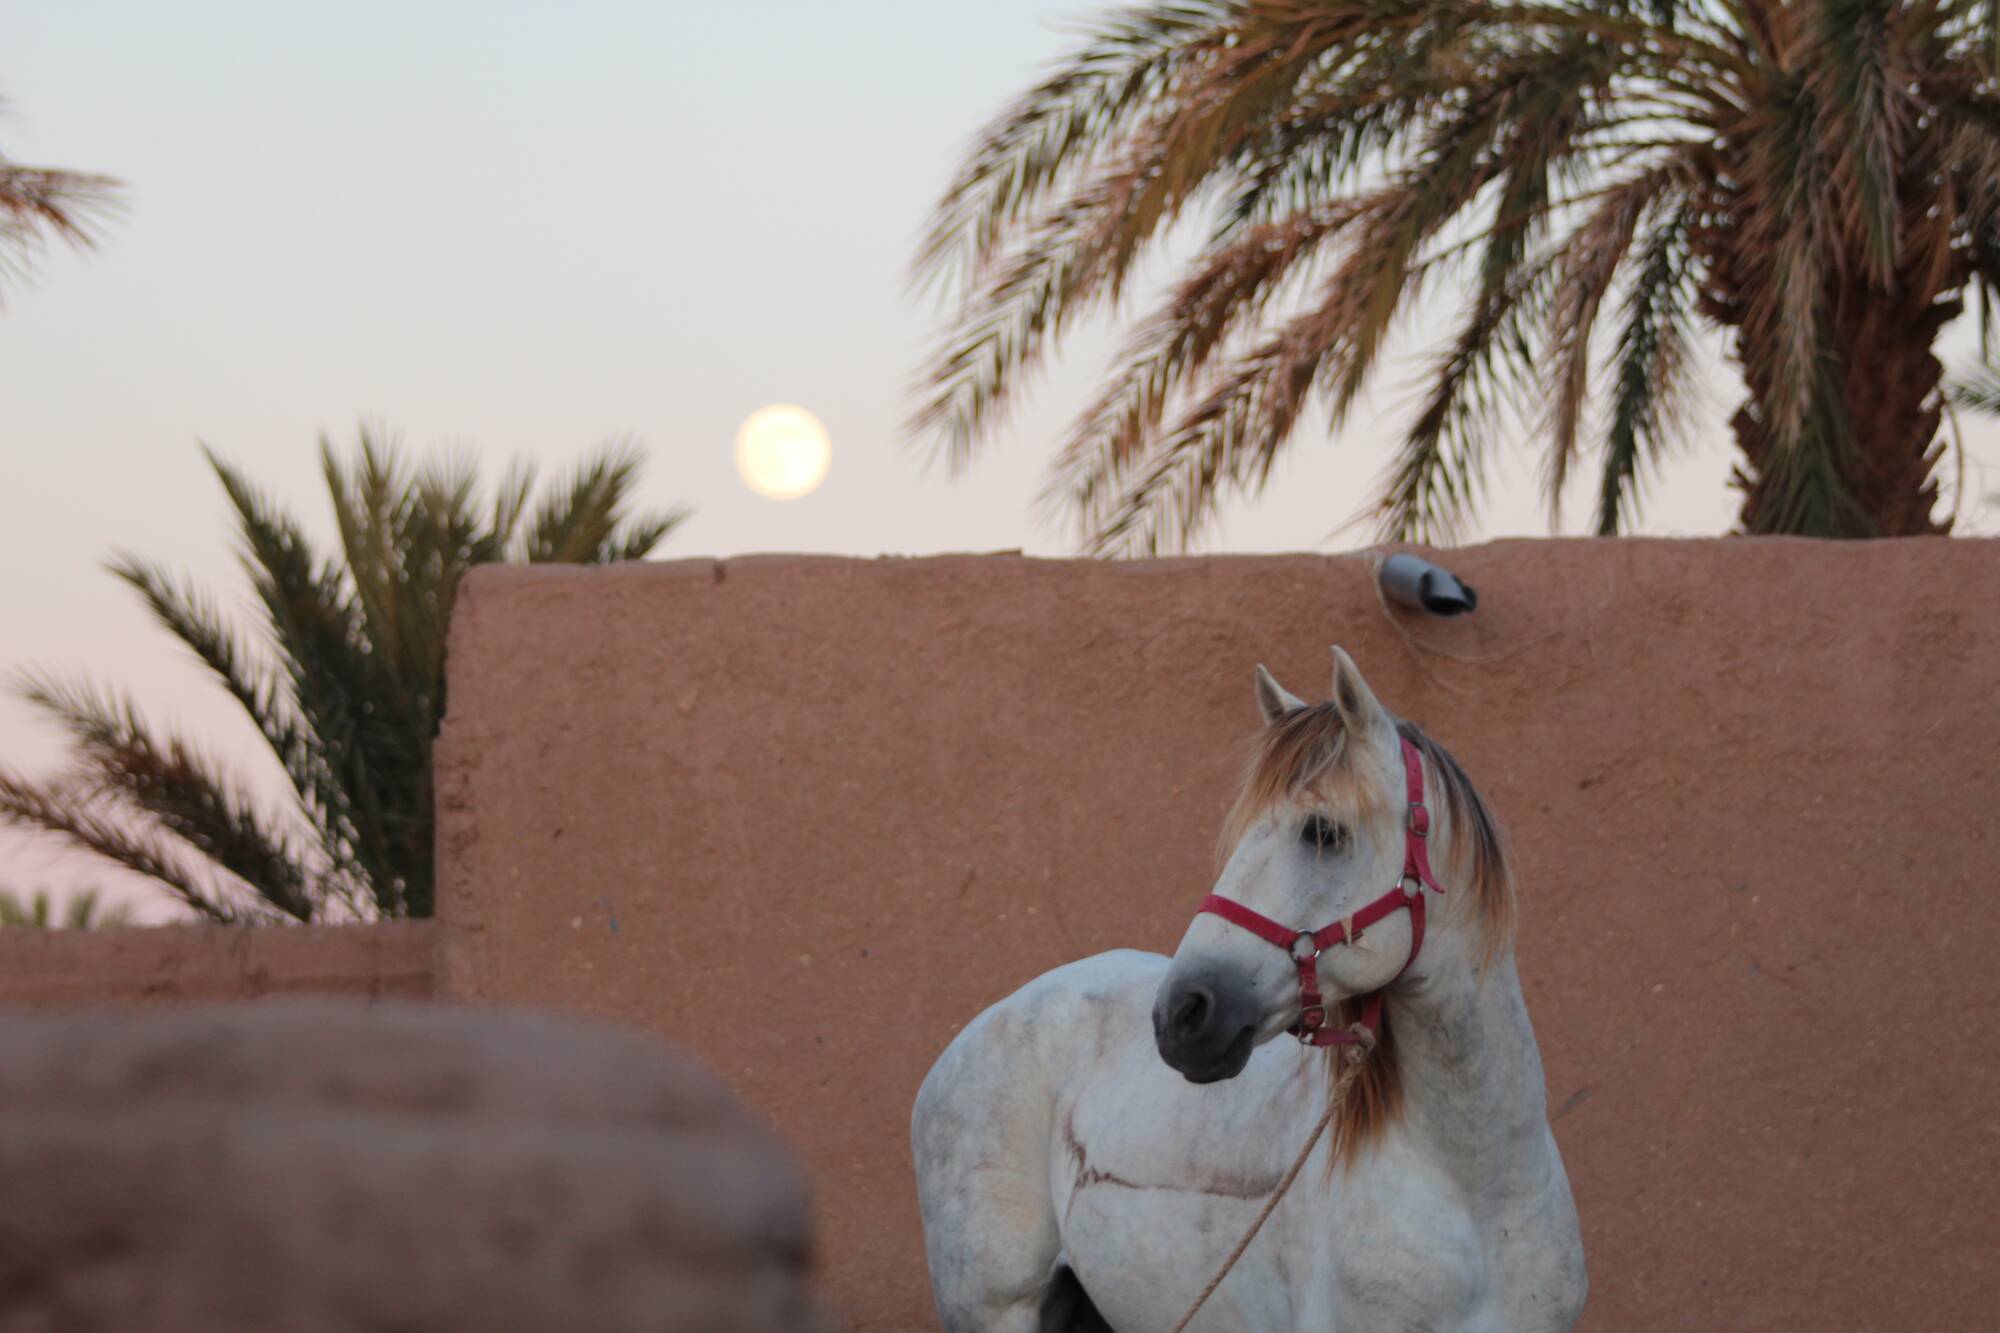 Desert Horse-trekking